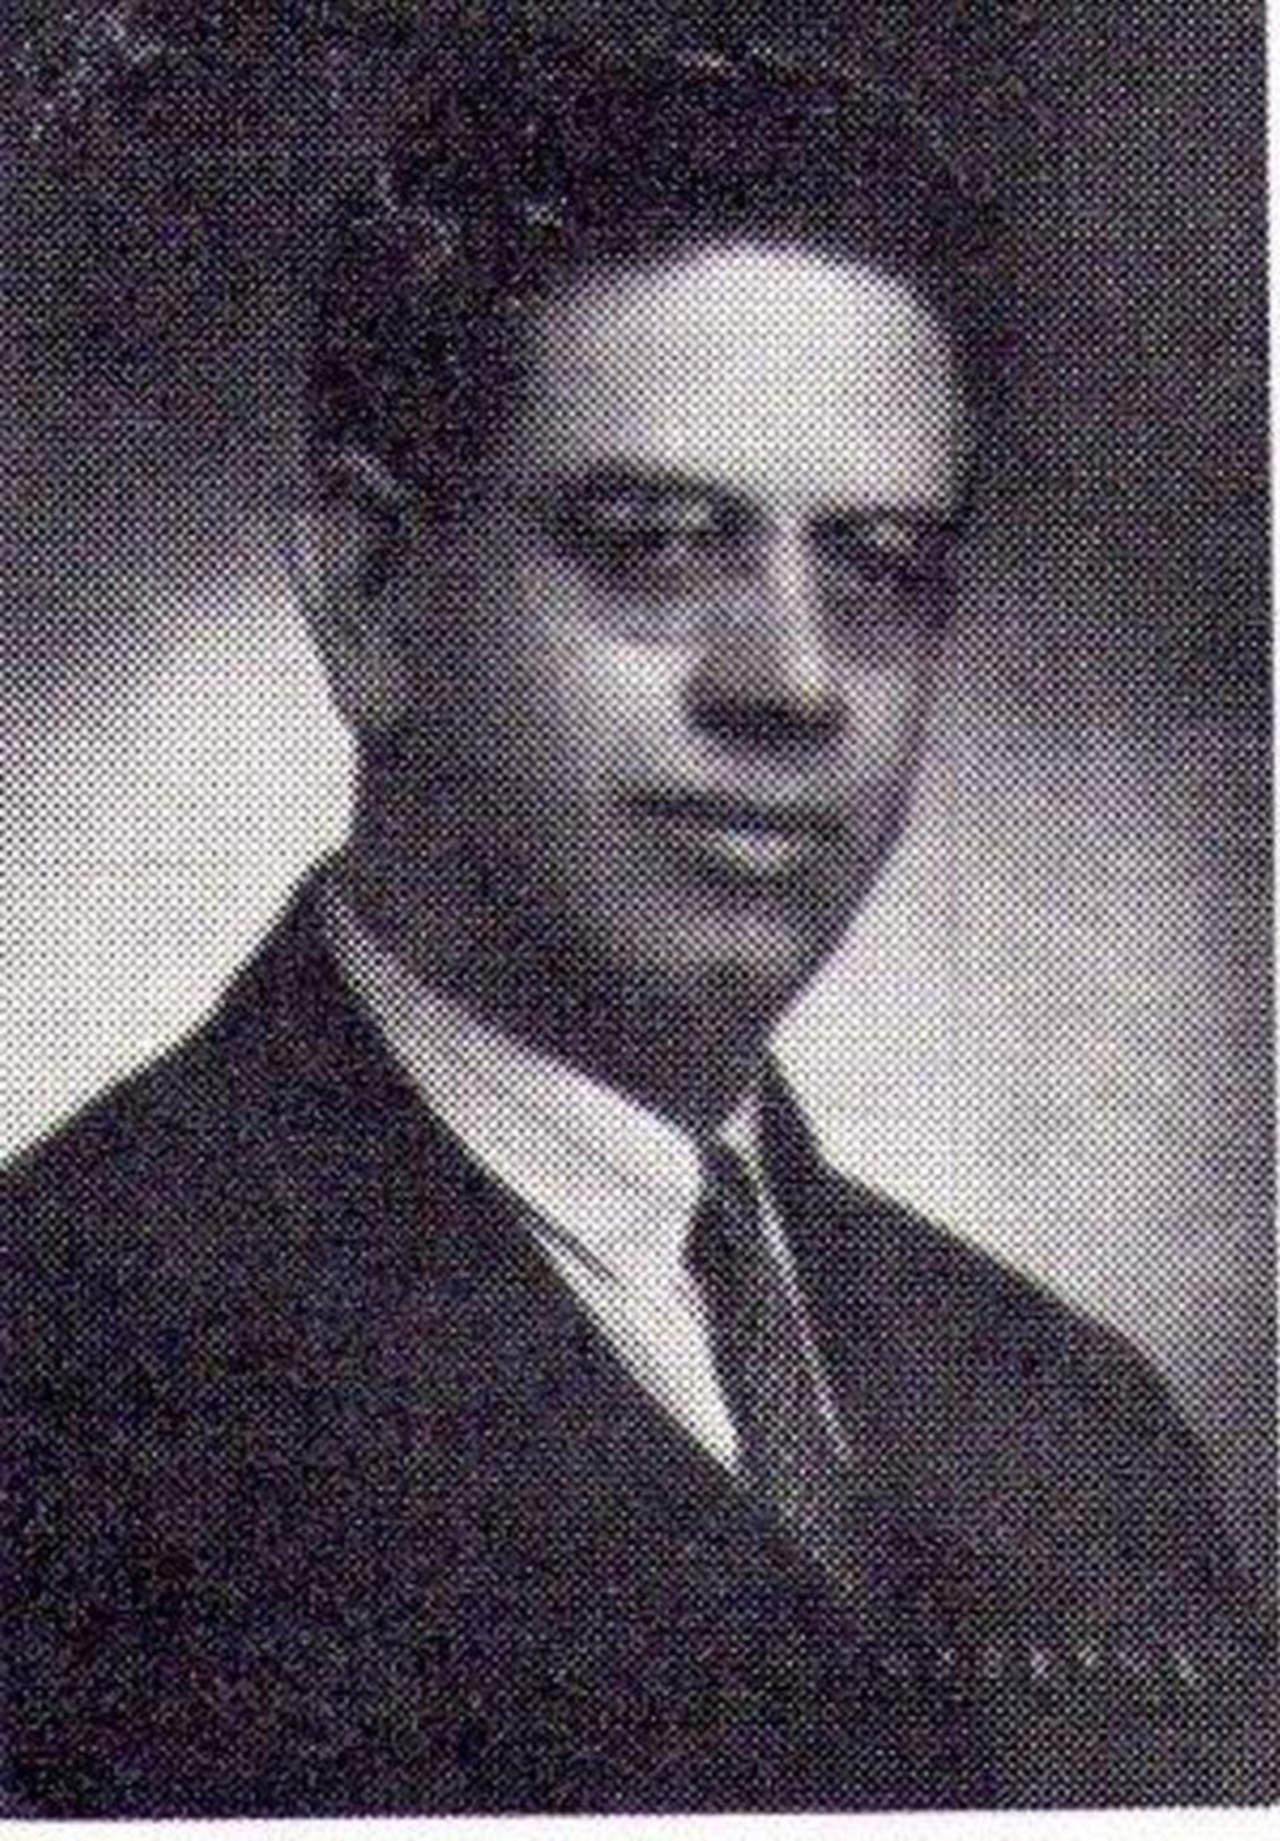 P. Porfirio Hernández Arciniega, S.J.
